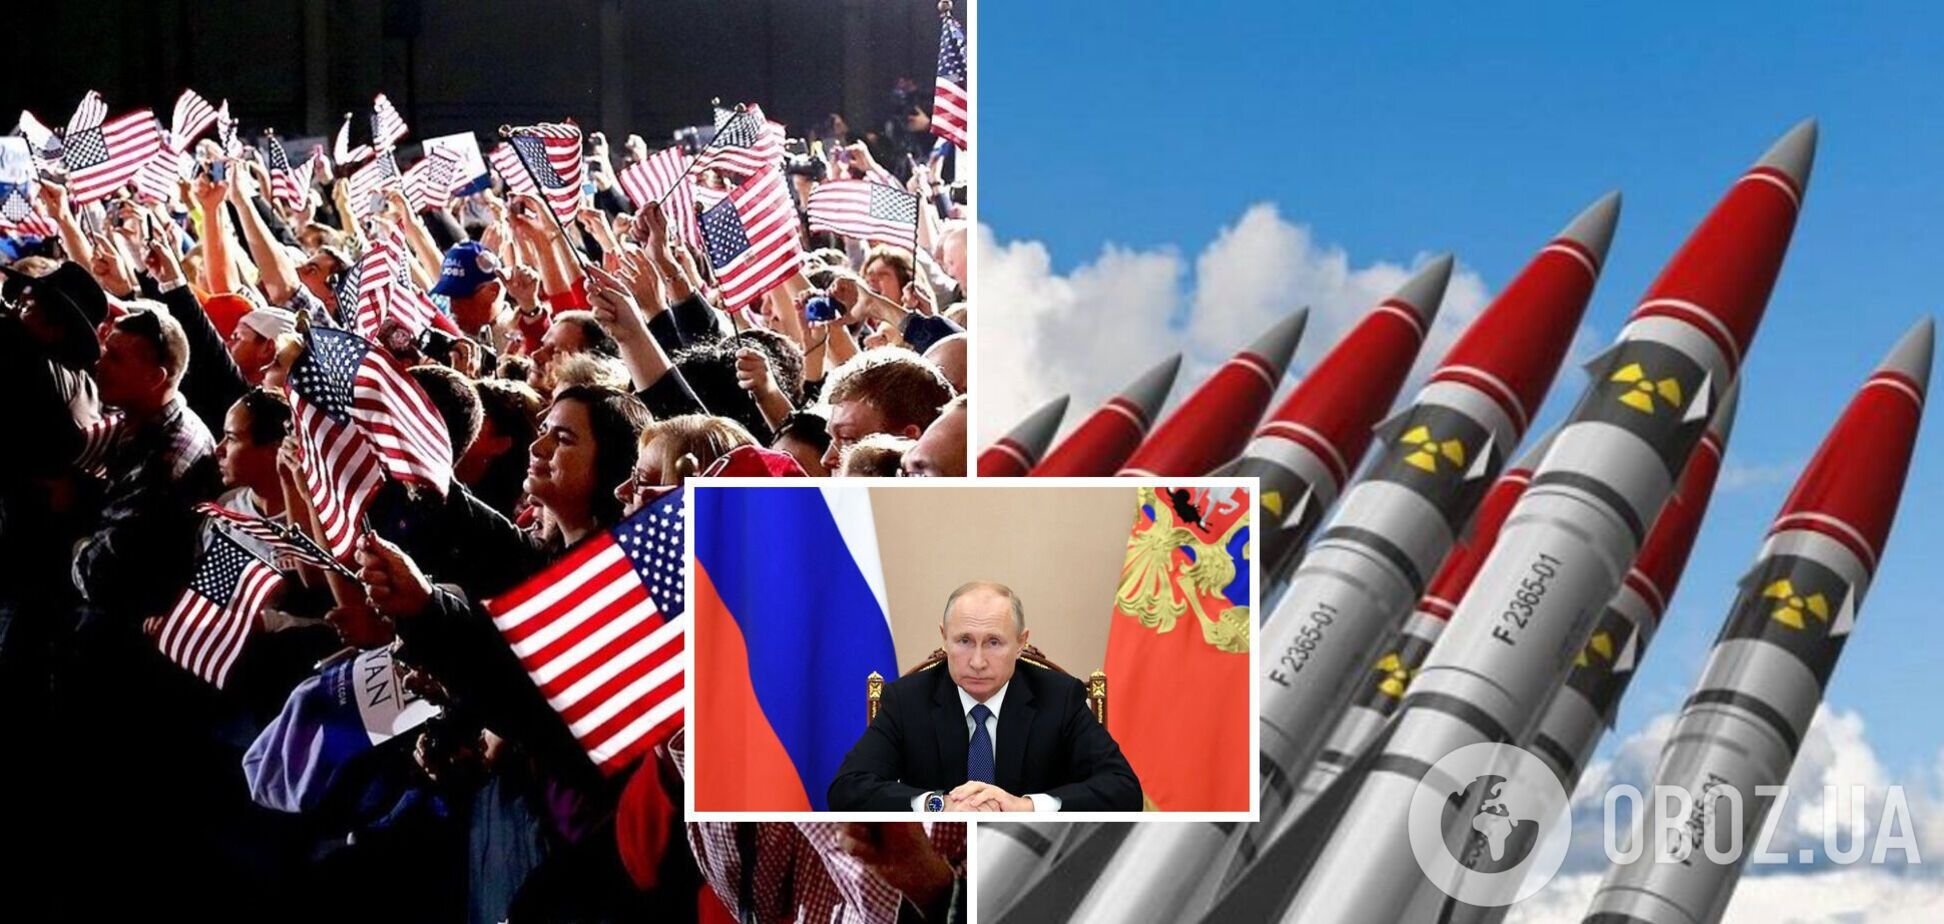 Скільки американців підтримують надання зброї Україні, незважаючи на ядерні погрози РФ: дані опитування